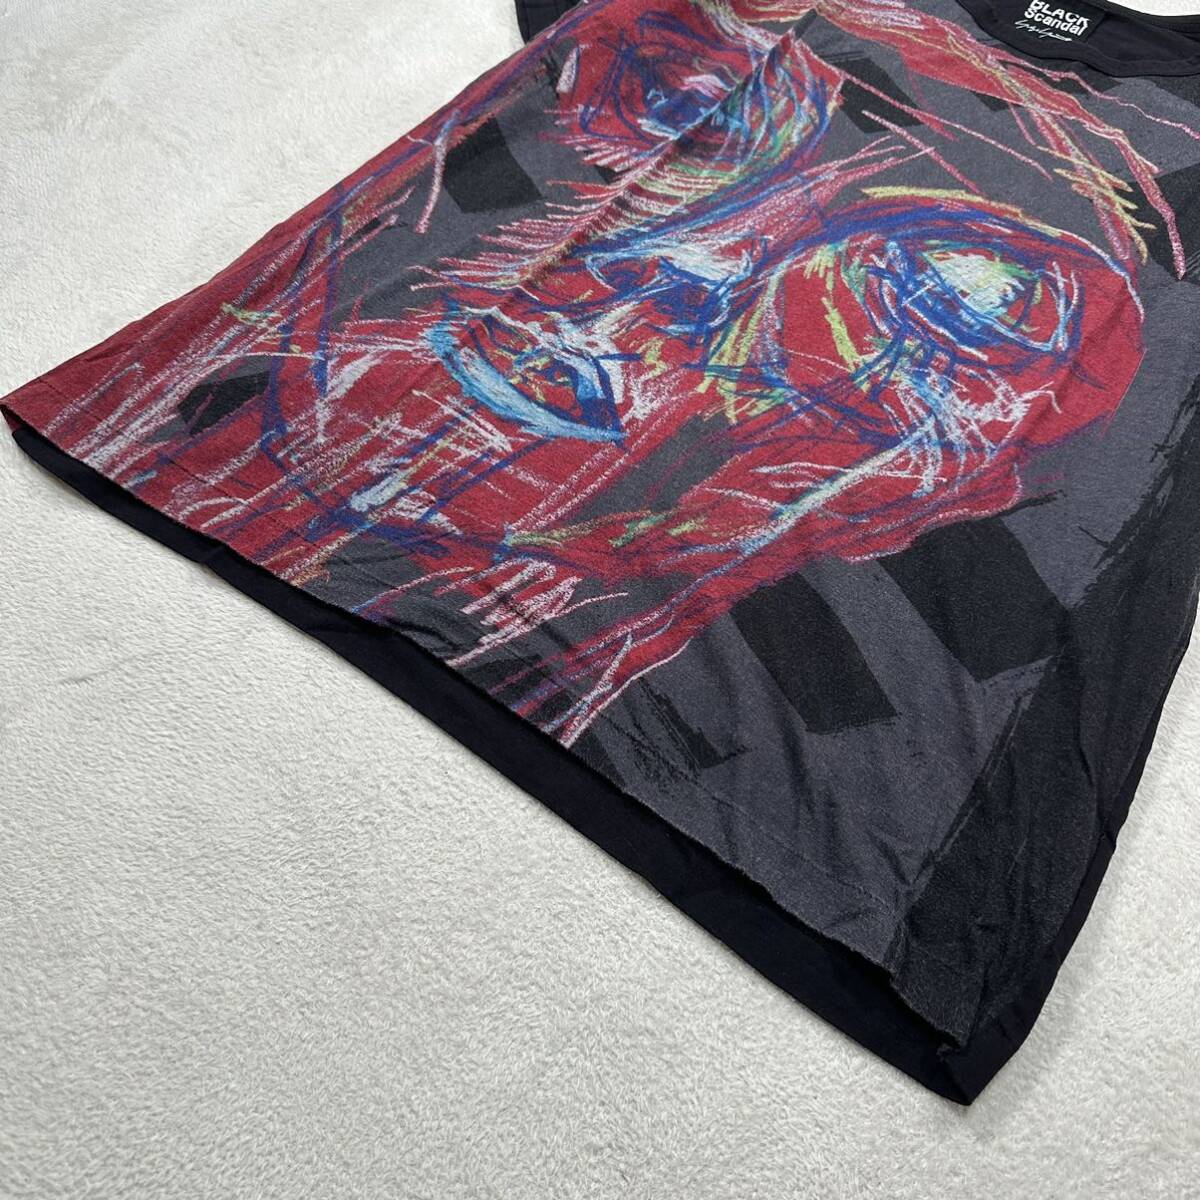 Yohji Yamamoto BLACK SCANDAL カットソー 3 ヨウジヤマモト 朝倉PT 赤顔半袖 プリント カットソー Tシャツ リヨセル70% コットン30%_画像6